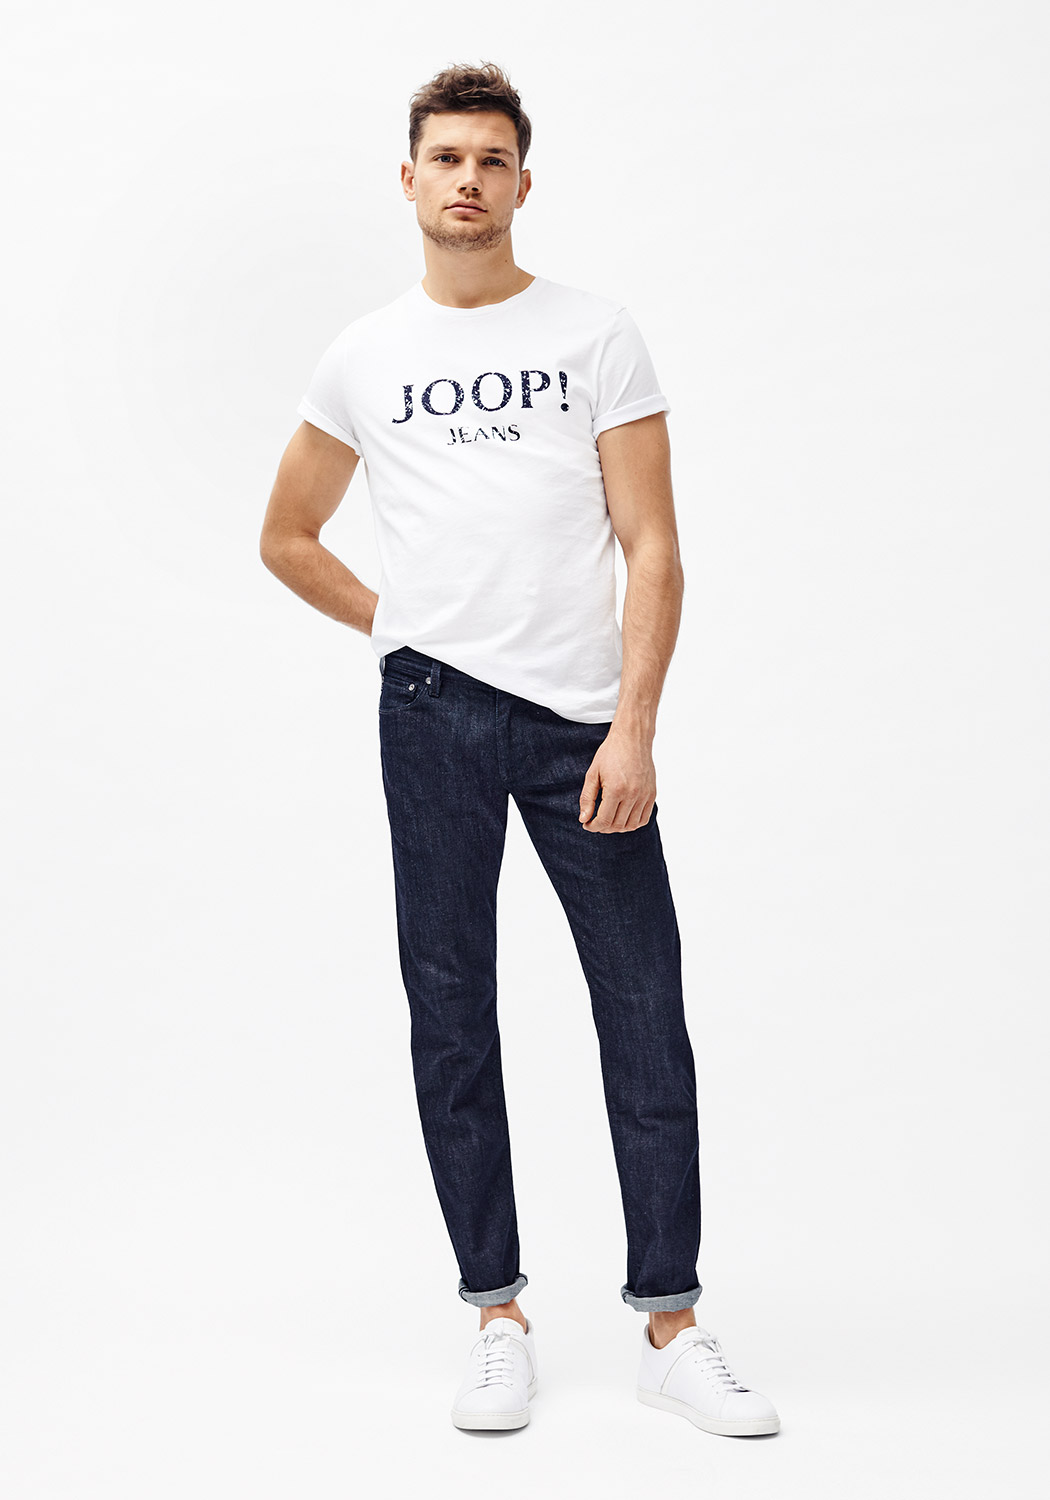 Joop Jeans - Ubrania w dobrym stylu dla każdego